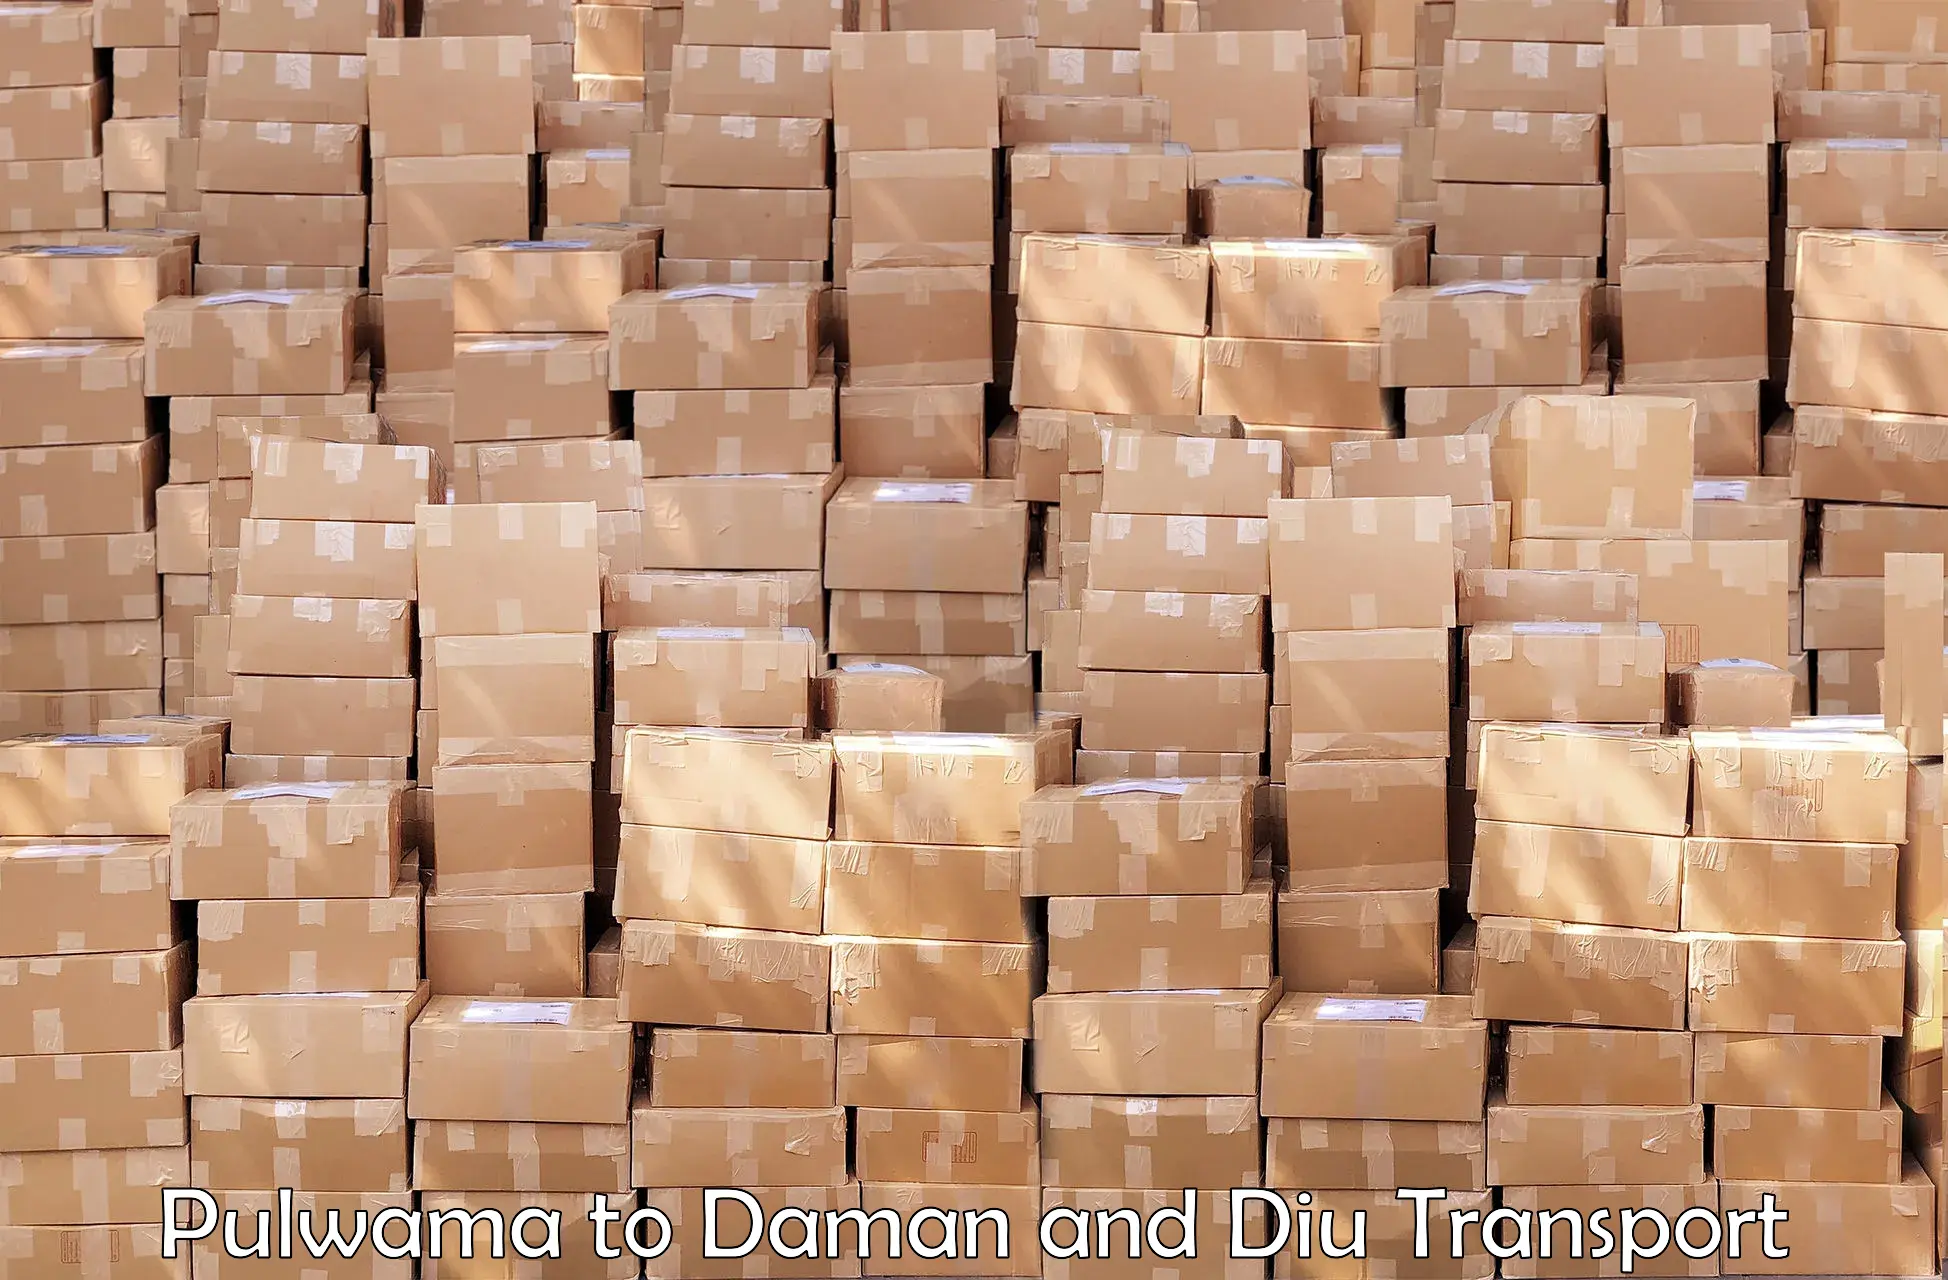 Logistics transportation services Pulwama to Daman and Diu